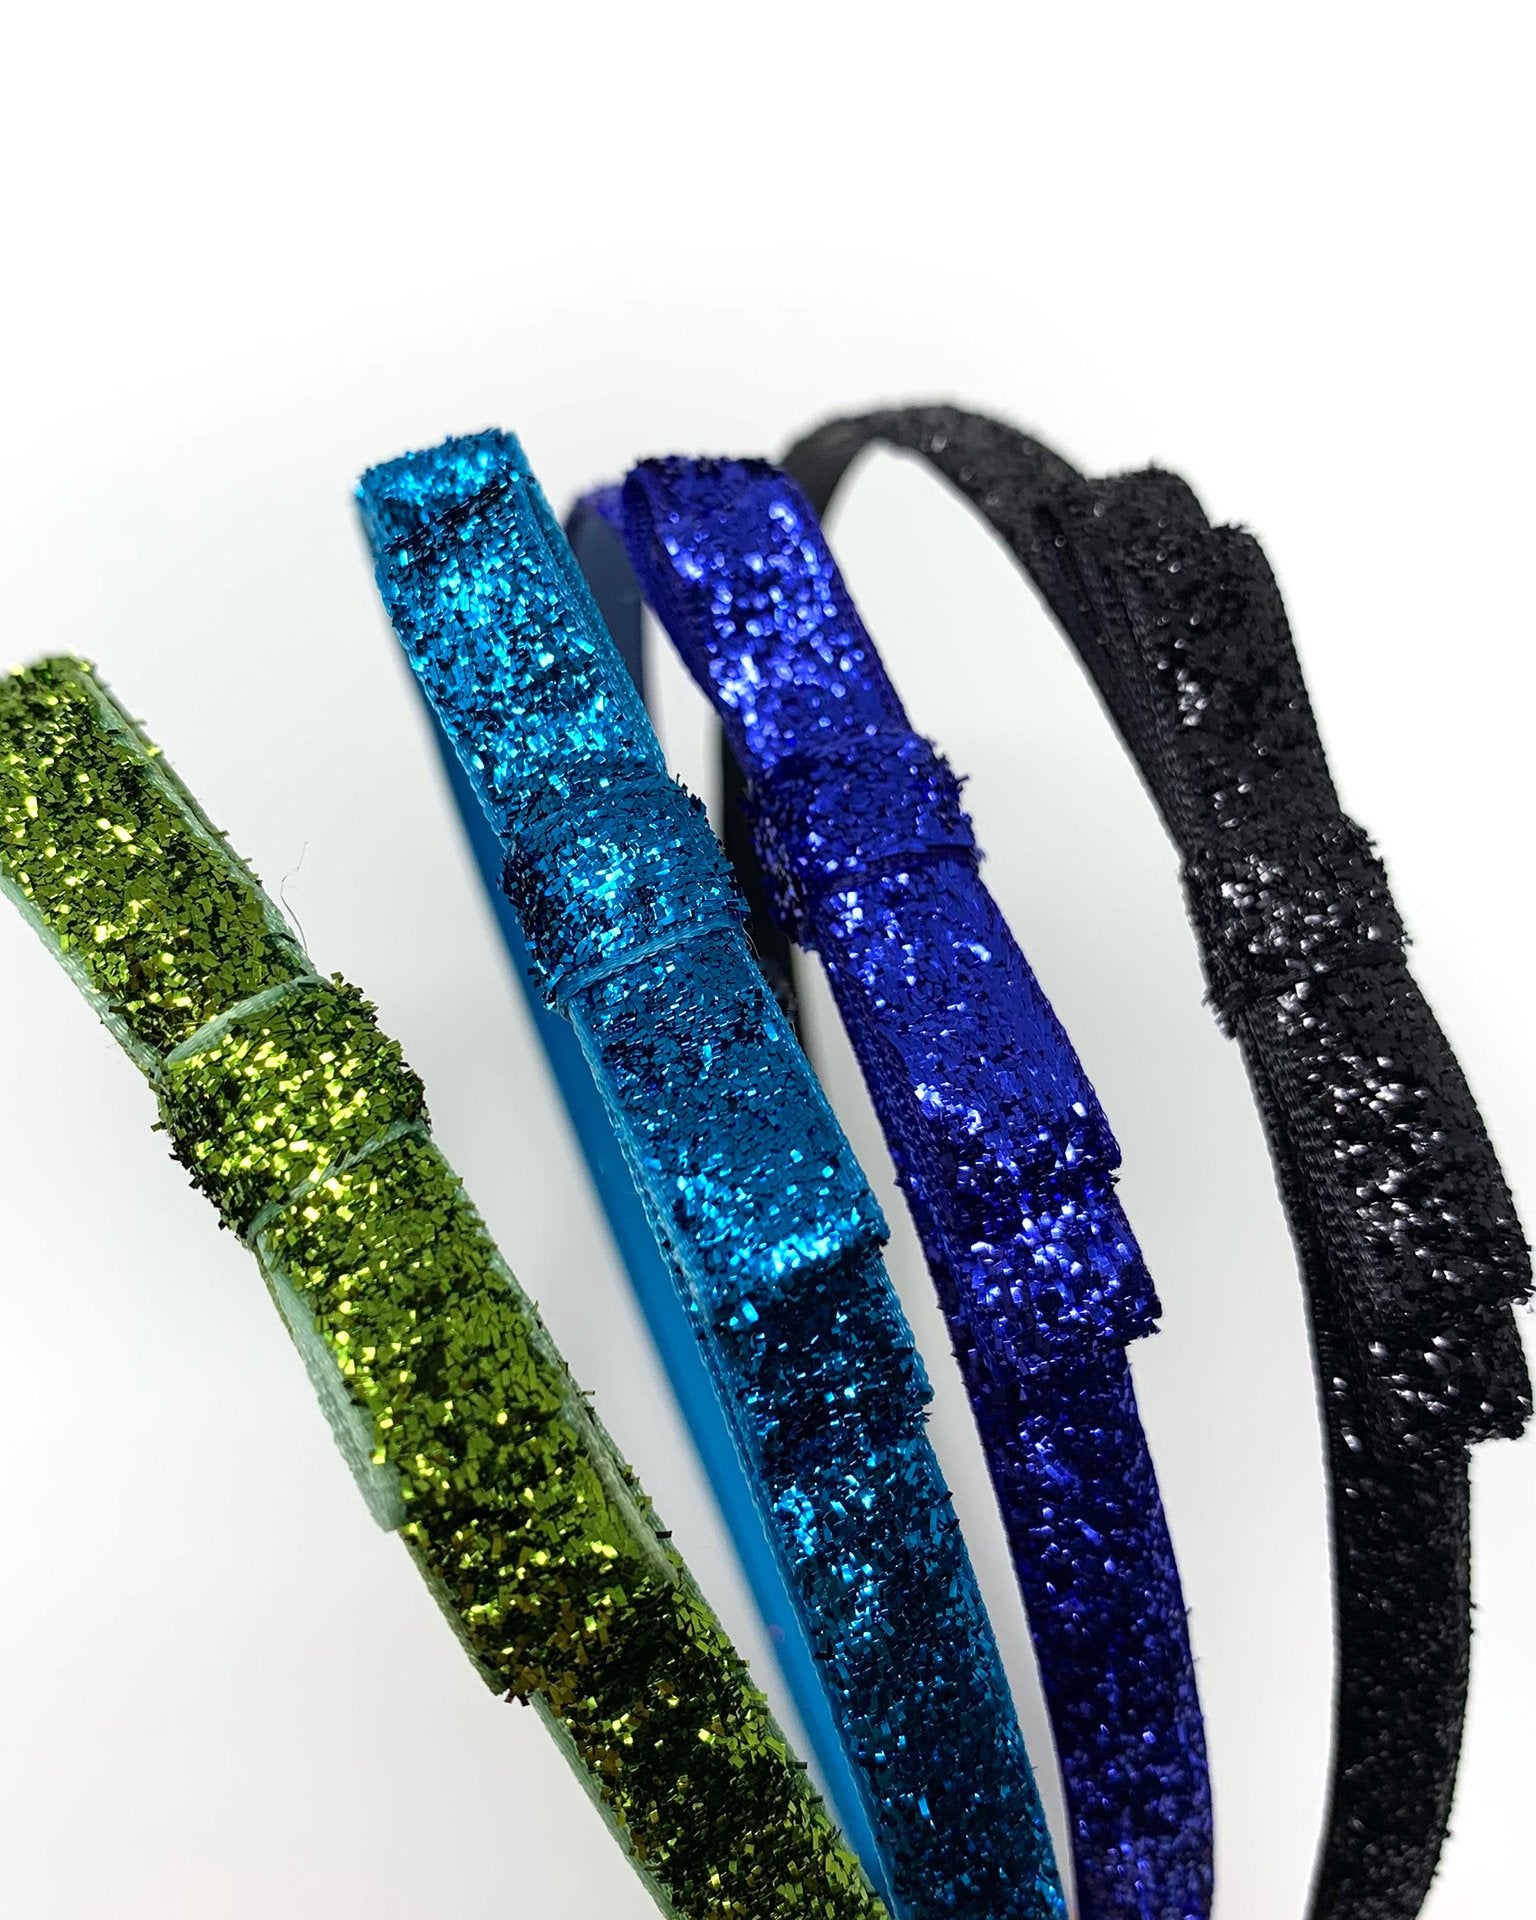 Little lululuvs accessories glitter headband in turquoise